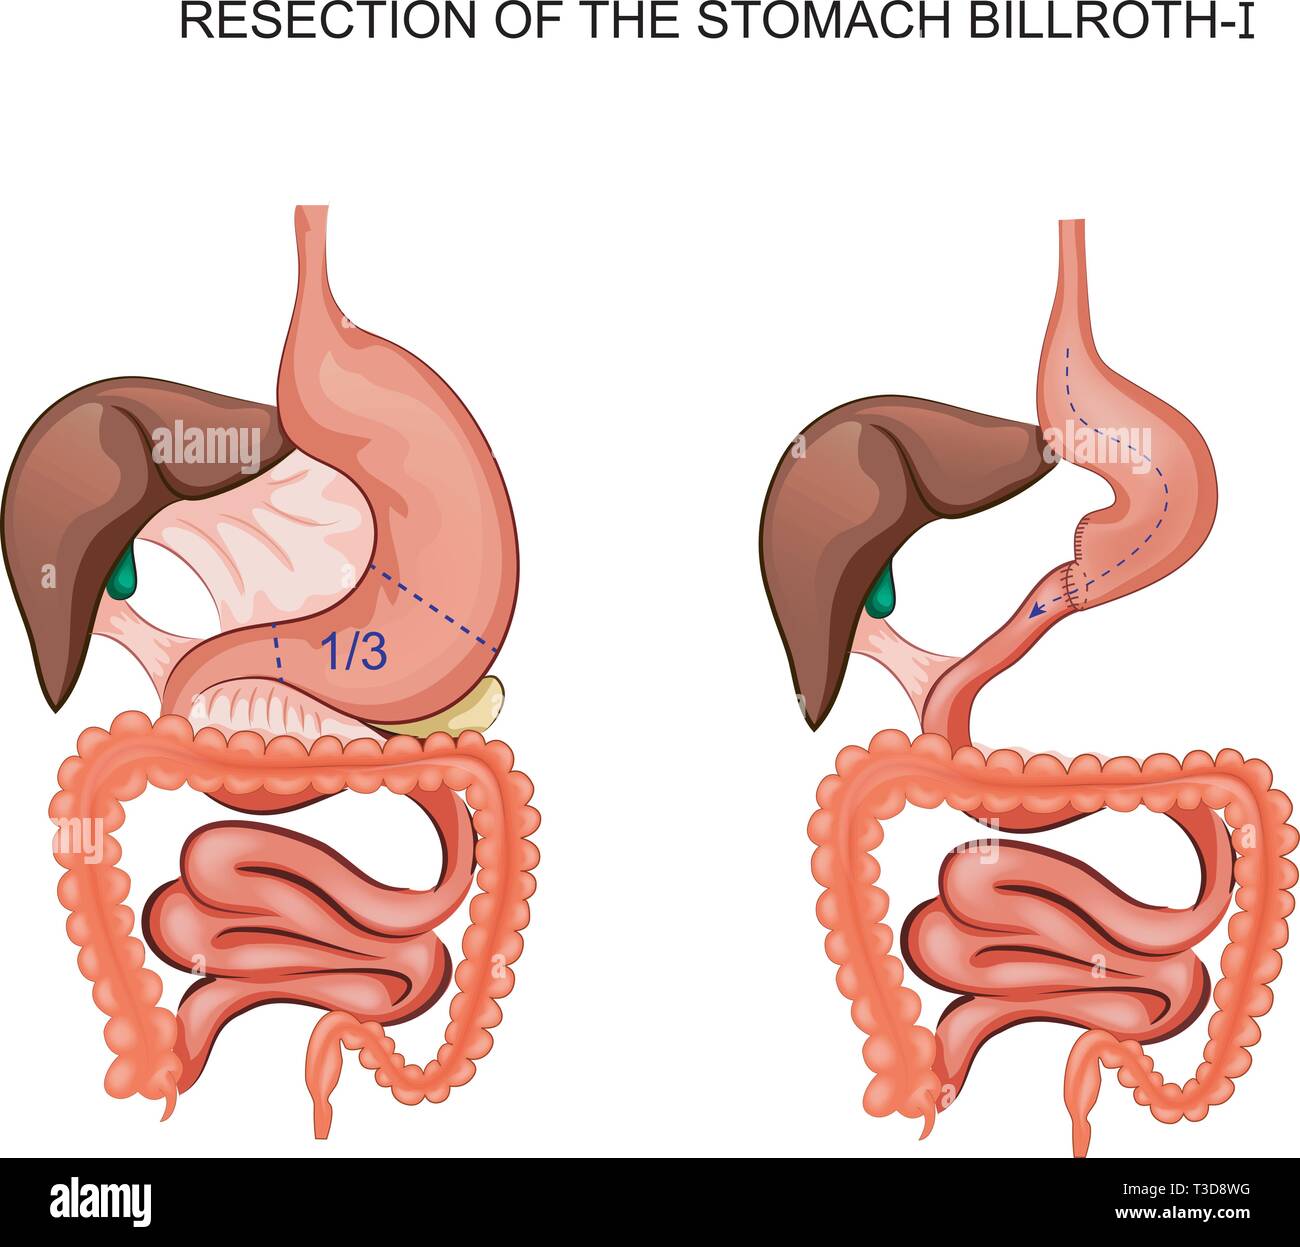 Illustrazione vettoriale di schema della resezione dello stomaco Billroth 1  Immagine e Vettoriale - Alamy